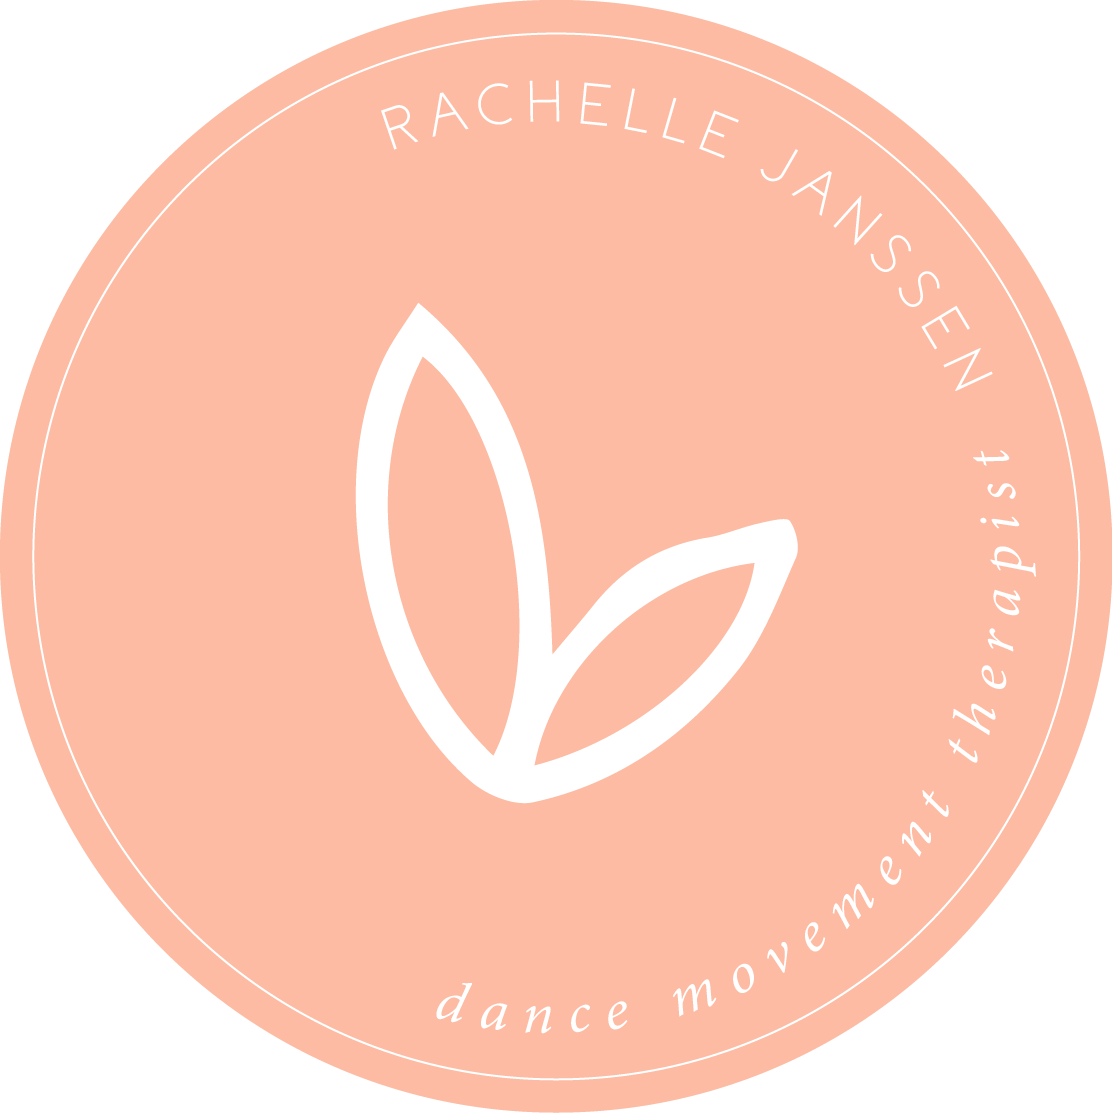 Leeromgeving | Rachelle Janssen